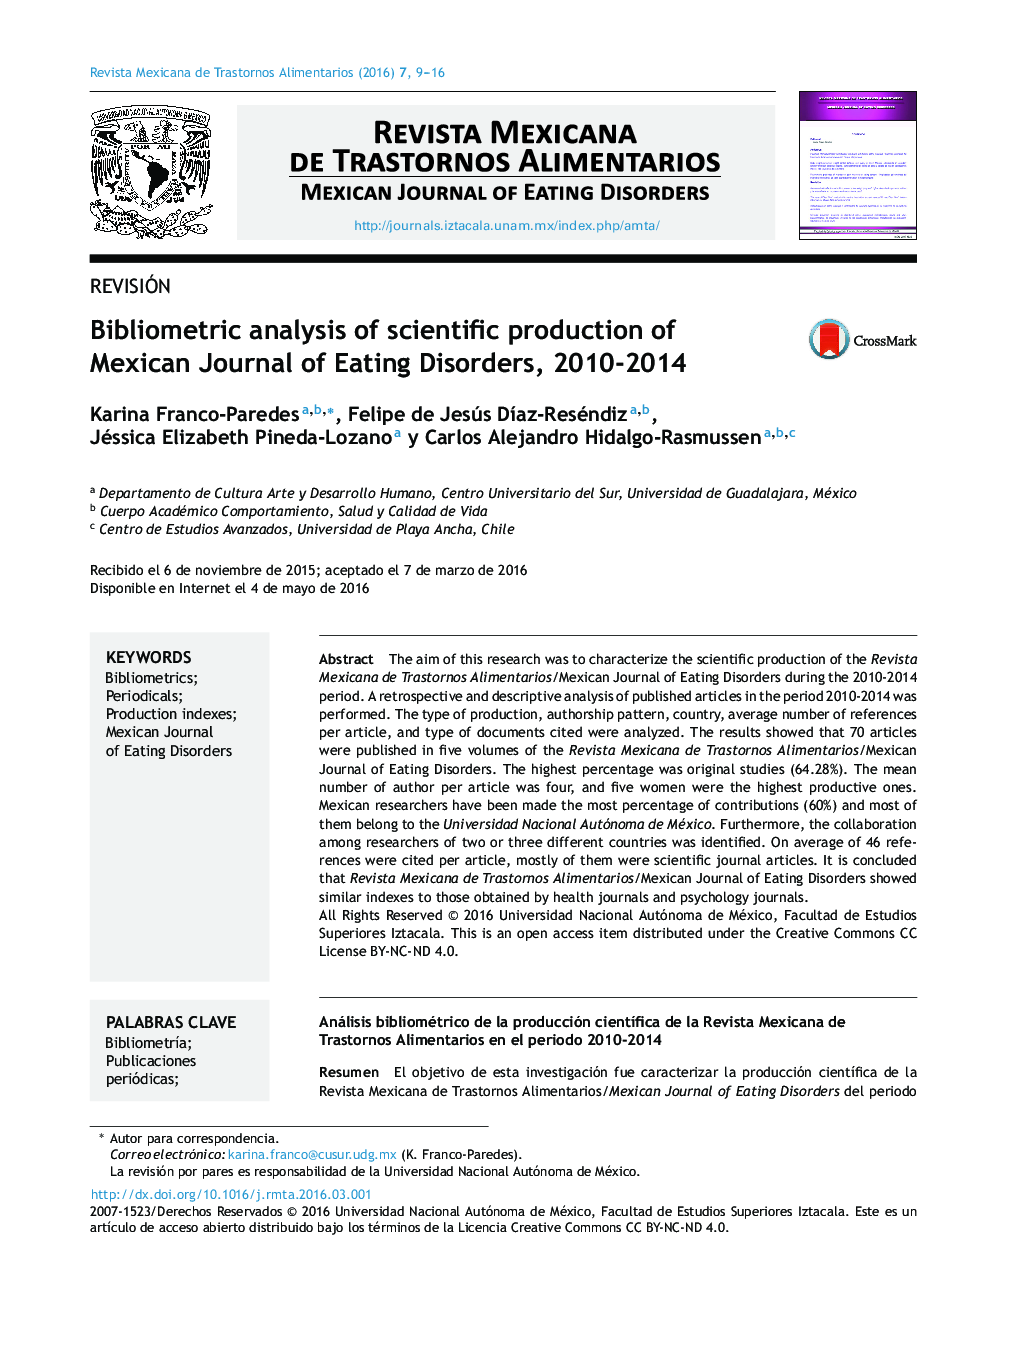 تجزیه و تحلیل کتاب سنجی تولید علمی مجله مکزیکی اختلالات خوردن، 2010-2014